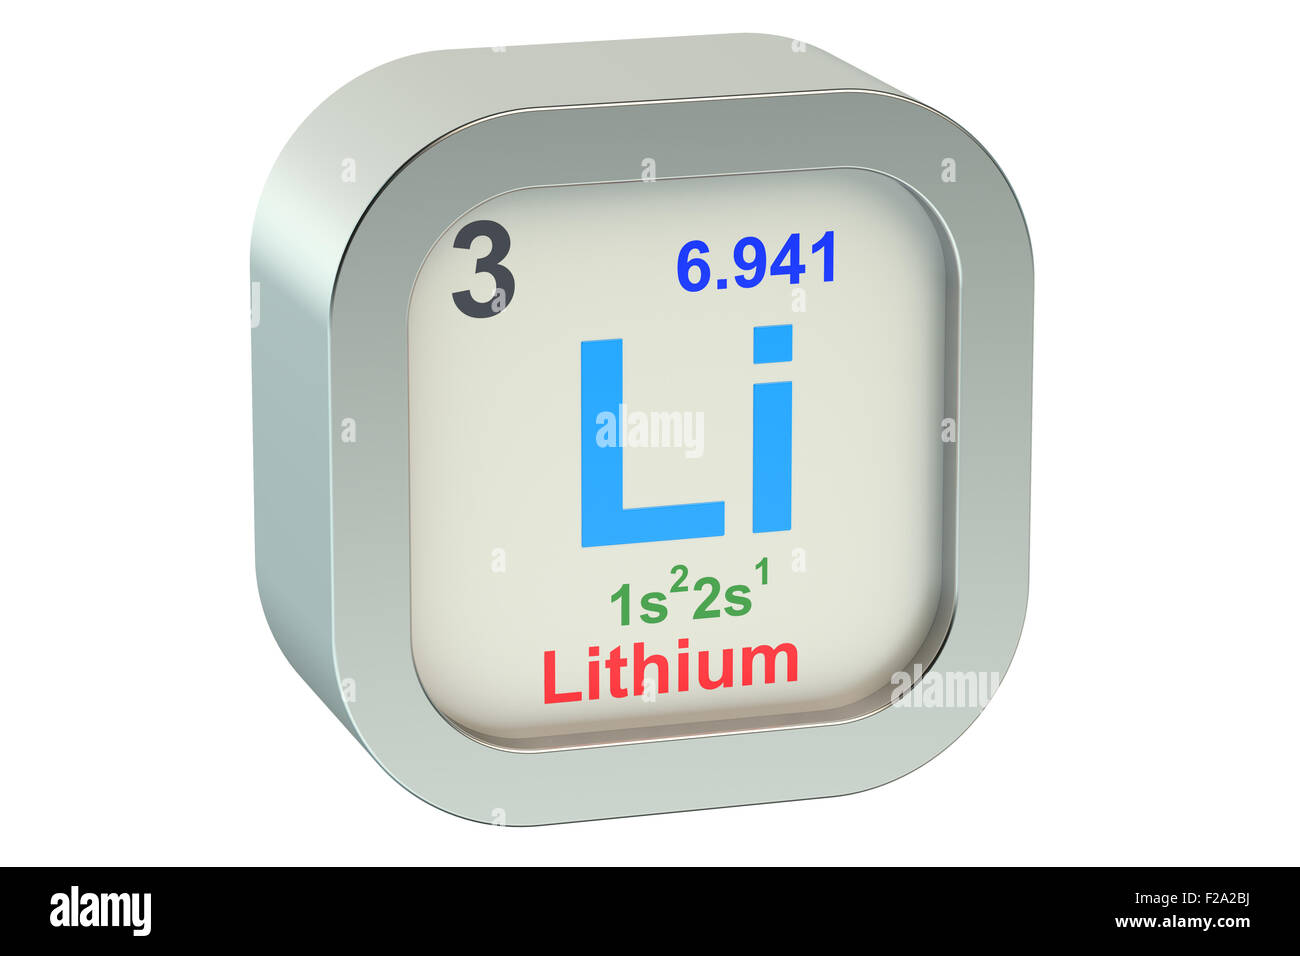 Lithium element symbol isolated on white background Stock Photo